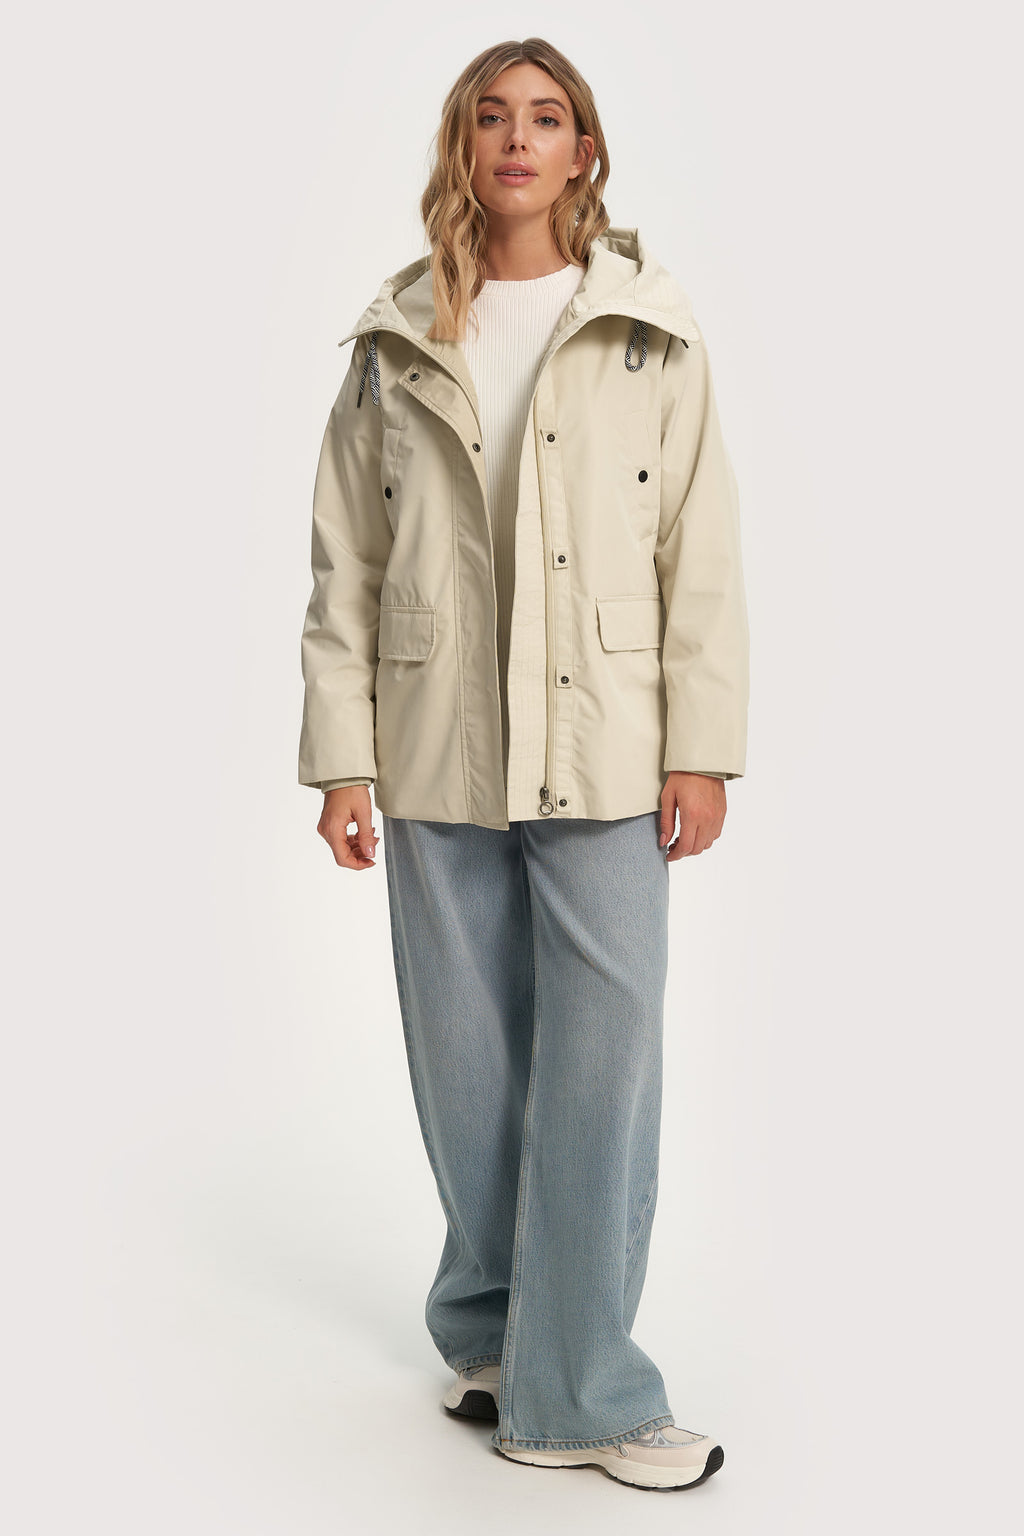 Alyssa Short Length Raincoat